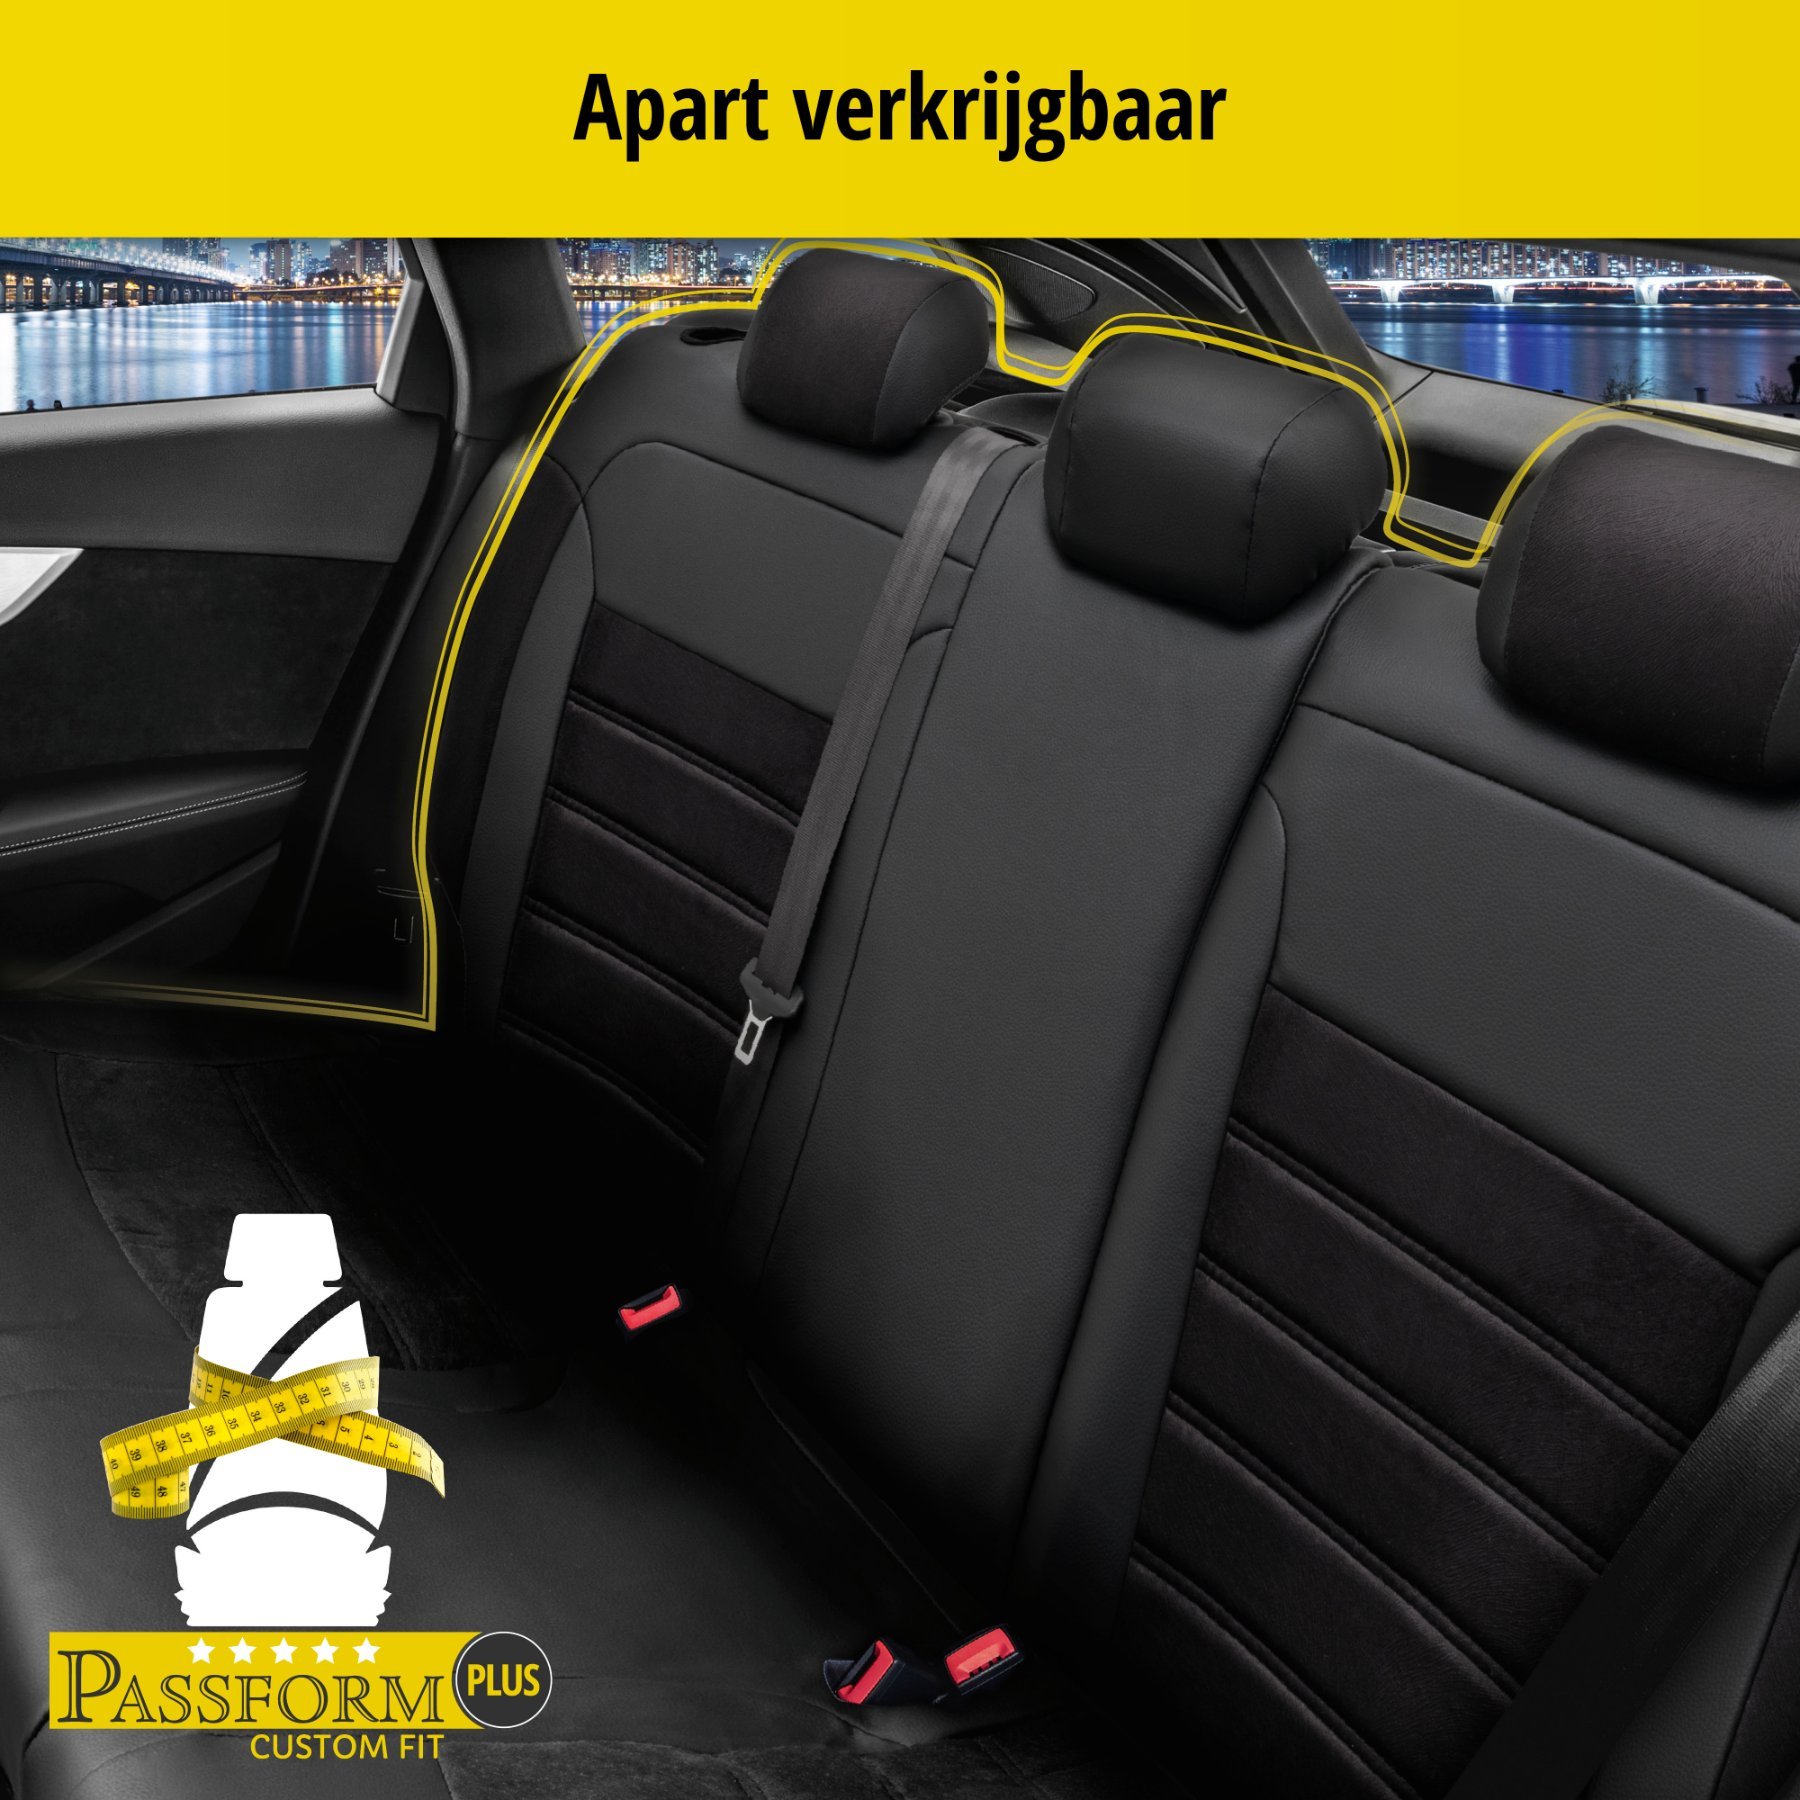 Auto stoelbekleding Bari geschikt voor Skoda Karoq 07/2017-Vandaag, 2 enkele zetelhoezen voor standard zetels